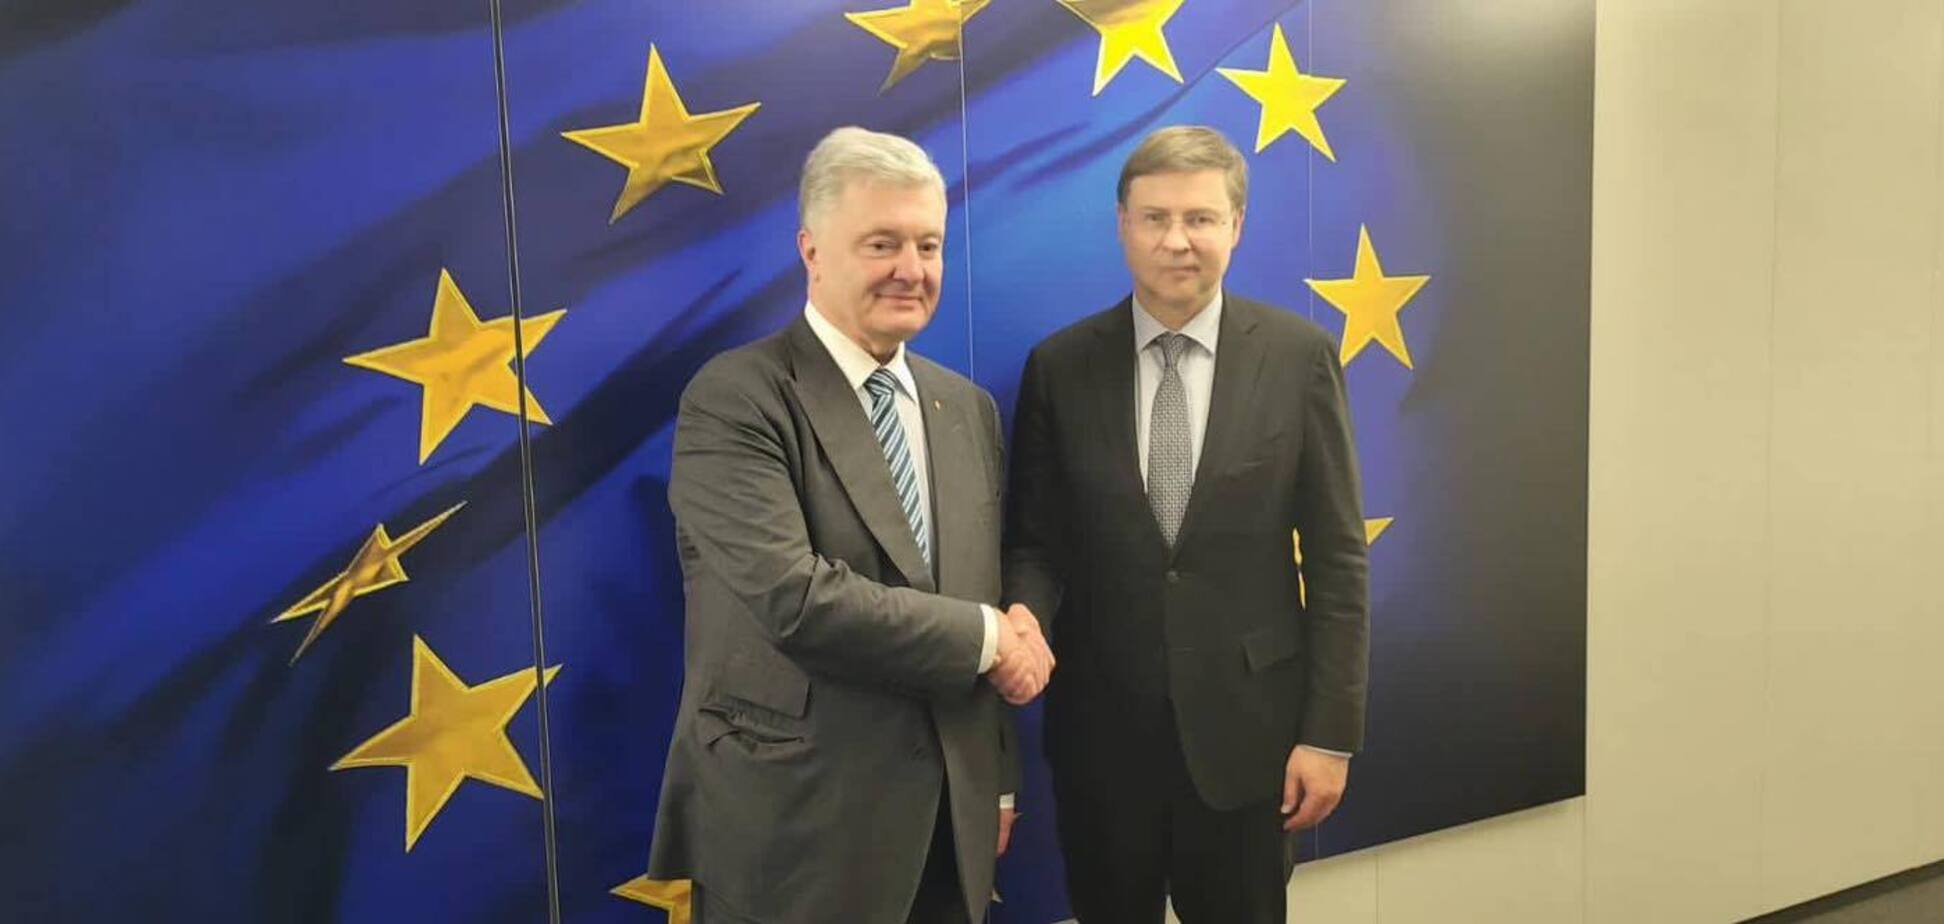  Україна отримала вікно можливостей для вступу в ЄС і має ним скористатись, – Порошенко з Брюсселя. Відео